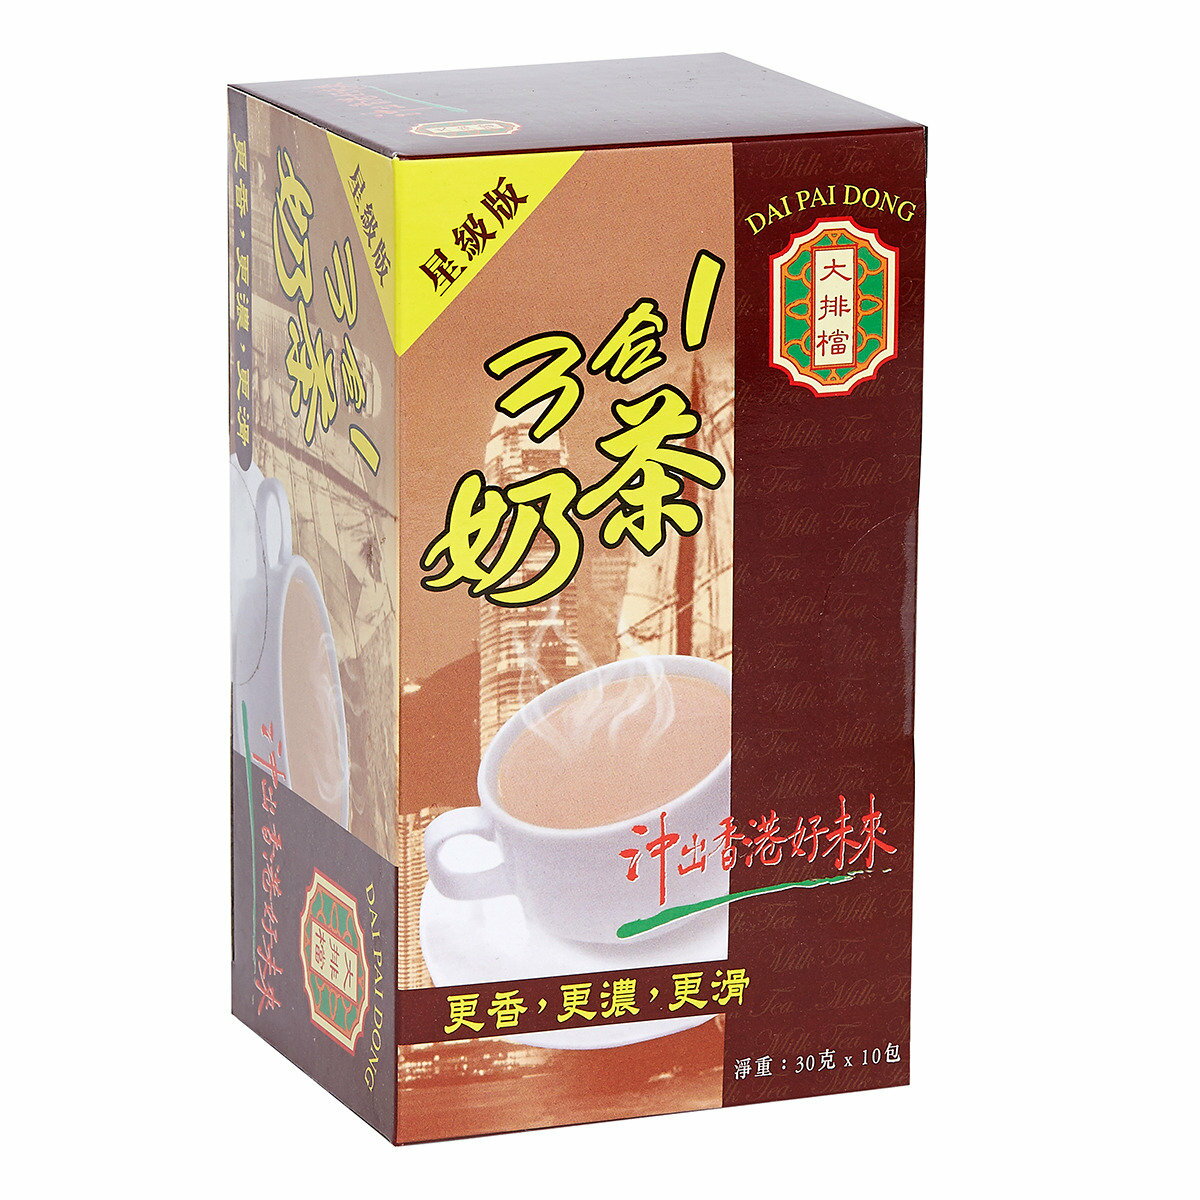 大排檔 港式奶茶 星級版 三合一即沖飲品 香港情懷 香港名牌